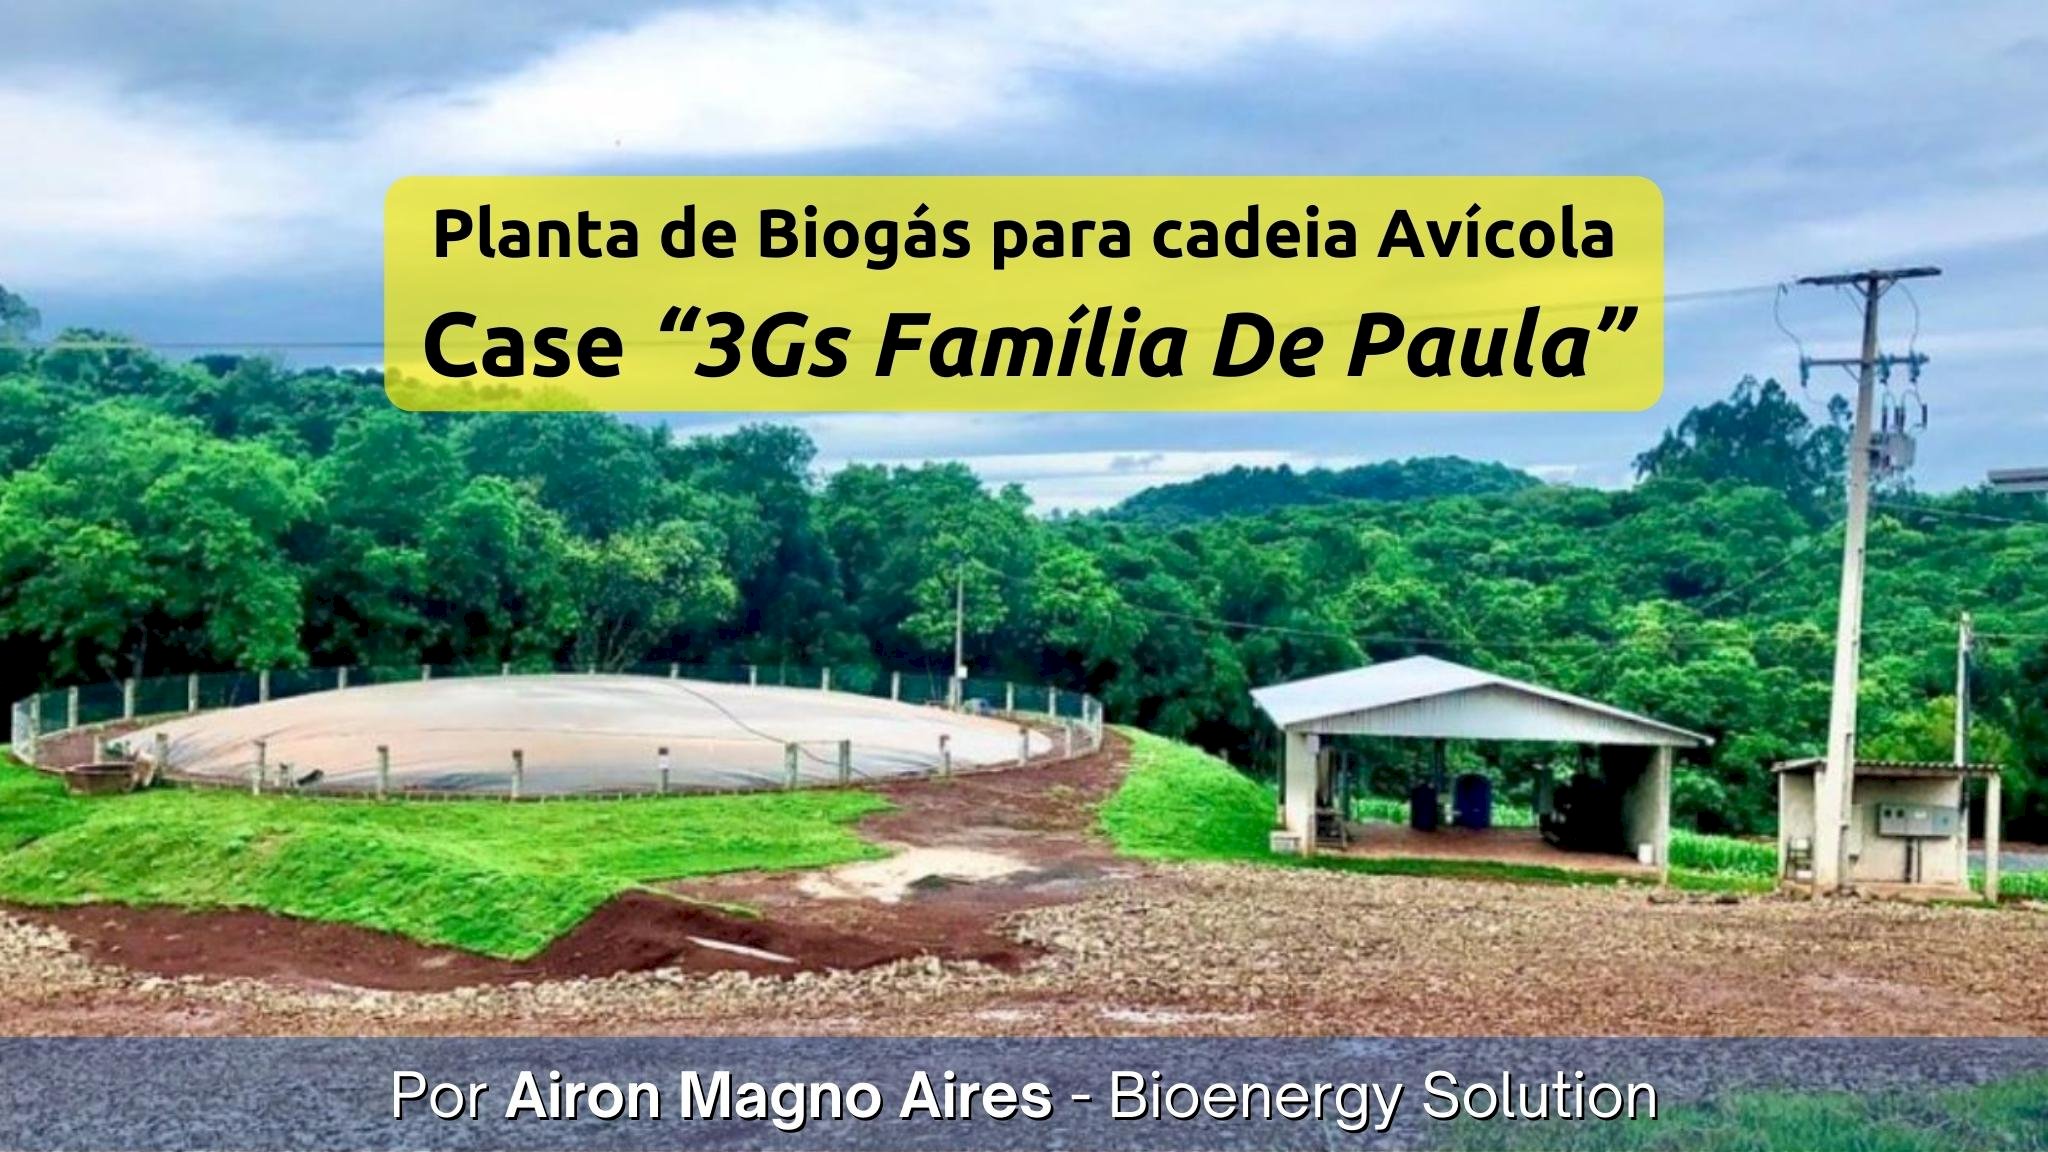 Desenvolvimento de Planta de Biogás para cadeia Avícola: Case “3Gs Família De Paula”